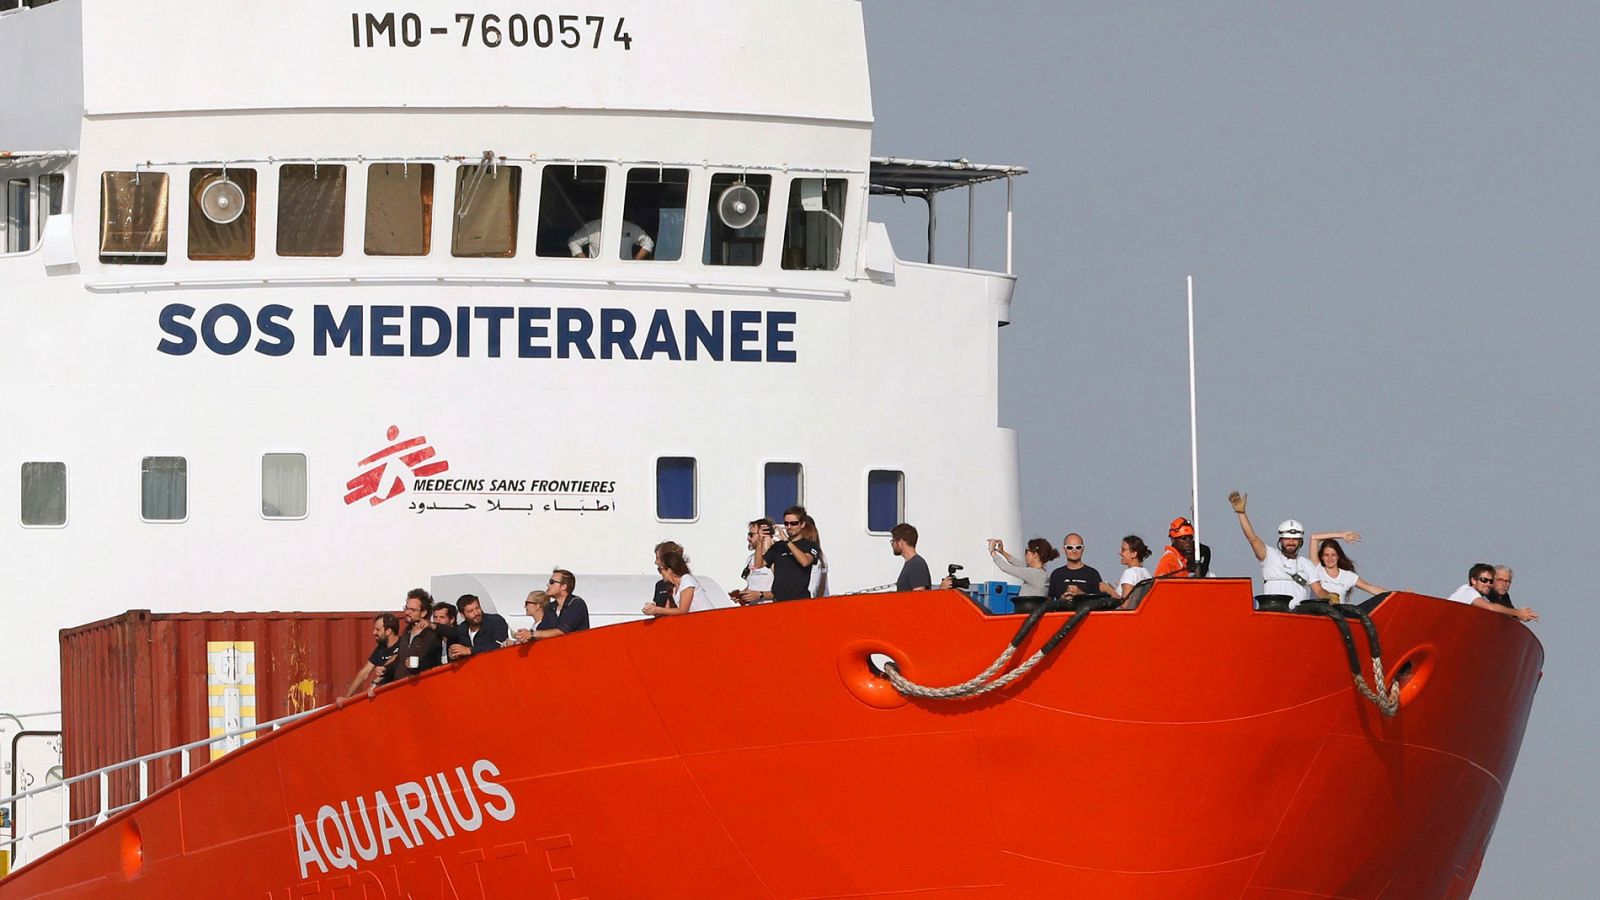 El Aquarius pone fin al rescate de migrantes por las "múltiples presiones políticas"